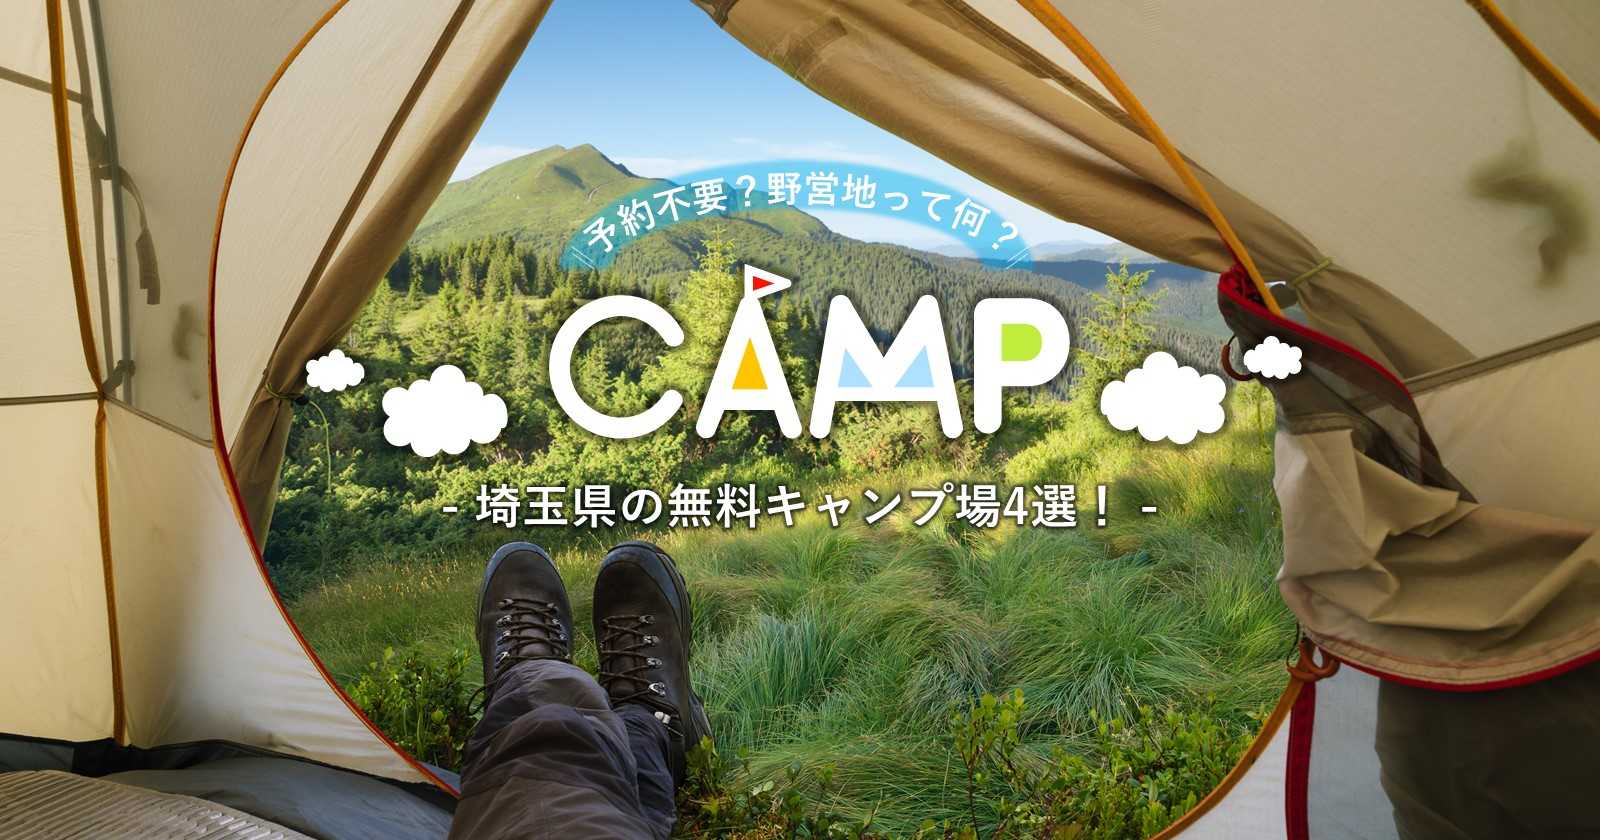 予約不要でキャンプに行ける埼玉県の無料キャンプ場4選 野営地って何 関東周辺 神奈川 群馬 山梨 茨城 の無料キャンプ場も一挙ご紹介 キャンプ アウトドアのtakibi タキビ Part 2